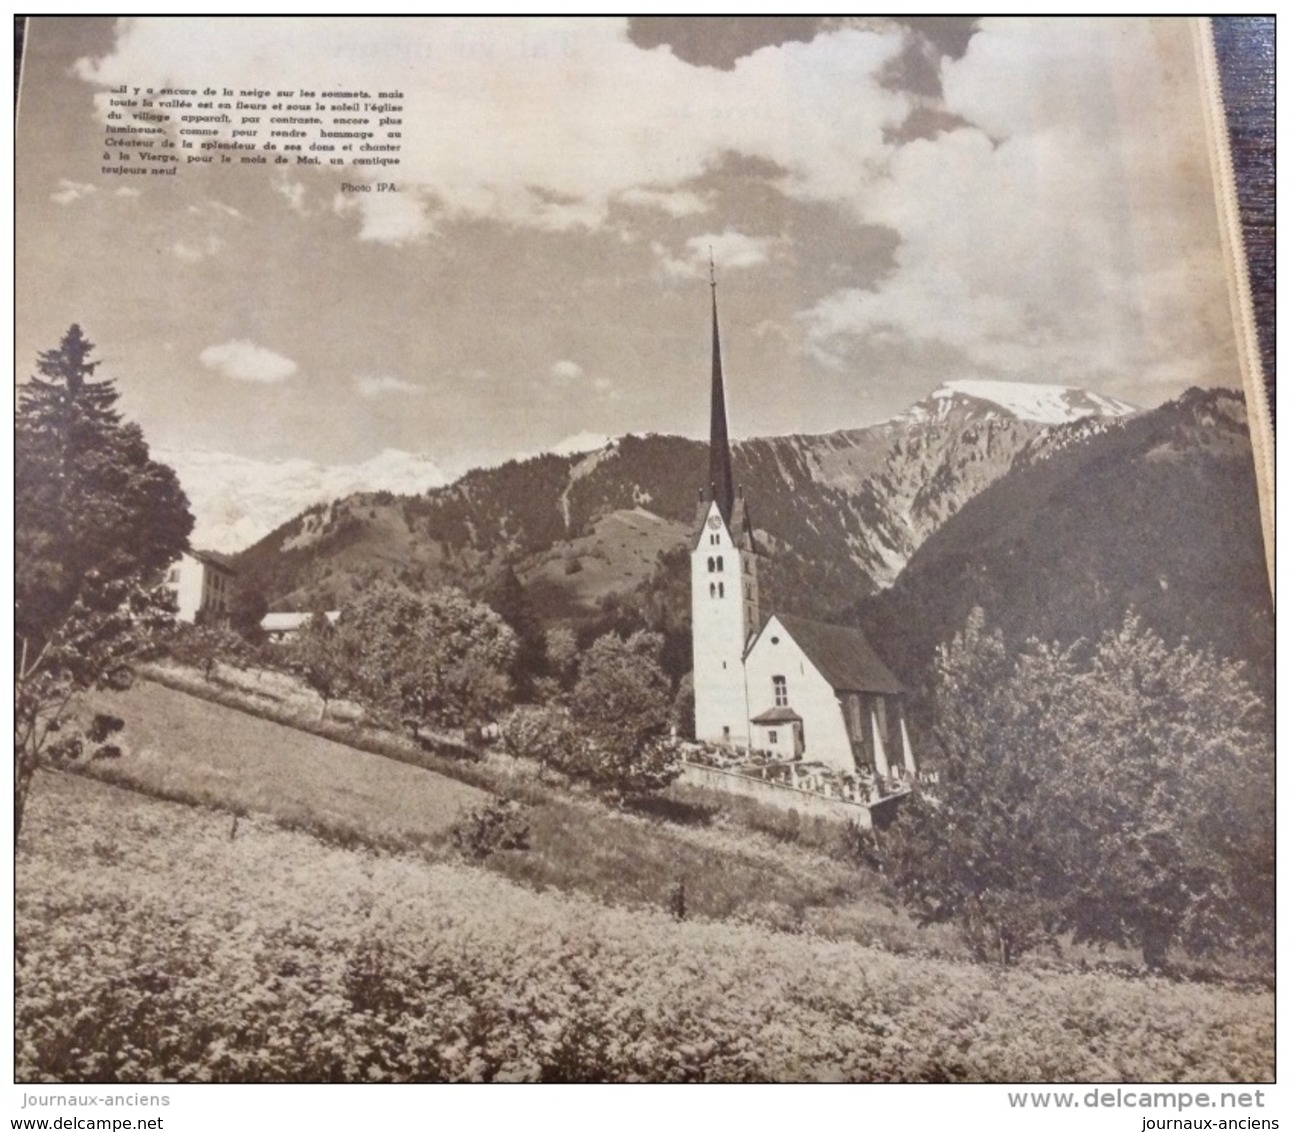 FRANCE MONDE CATHOLIQUE N° 52 MAI 1939 - DOMREMY - NOTRE DAME DE PARIS - DIOCÈS DE MEAUX - 1900 - 1949